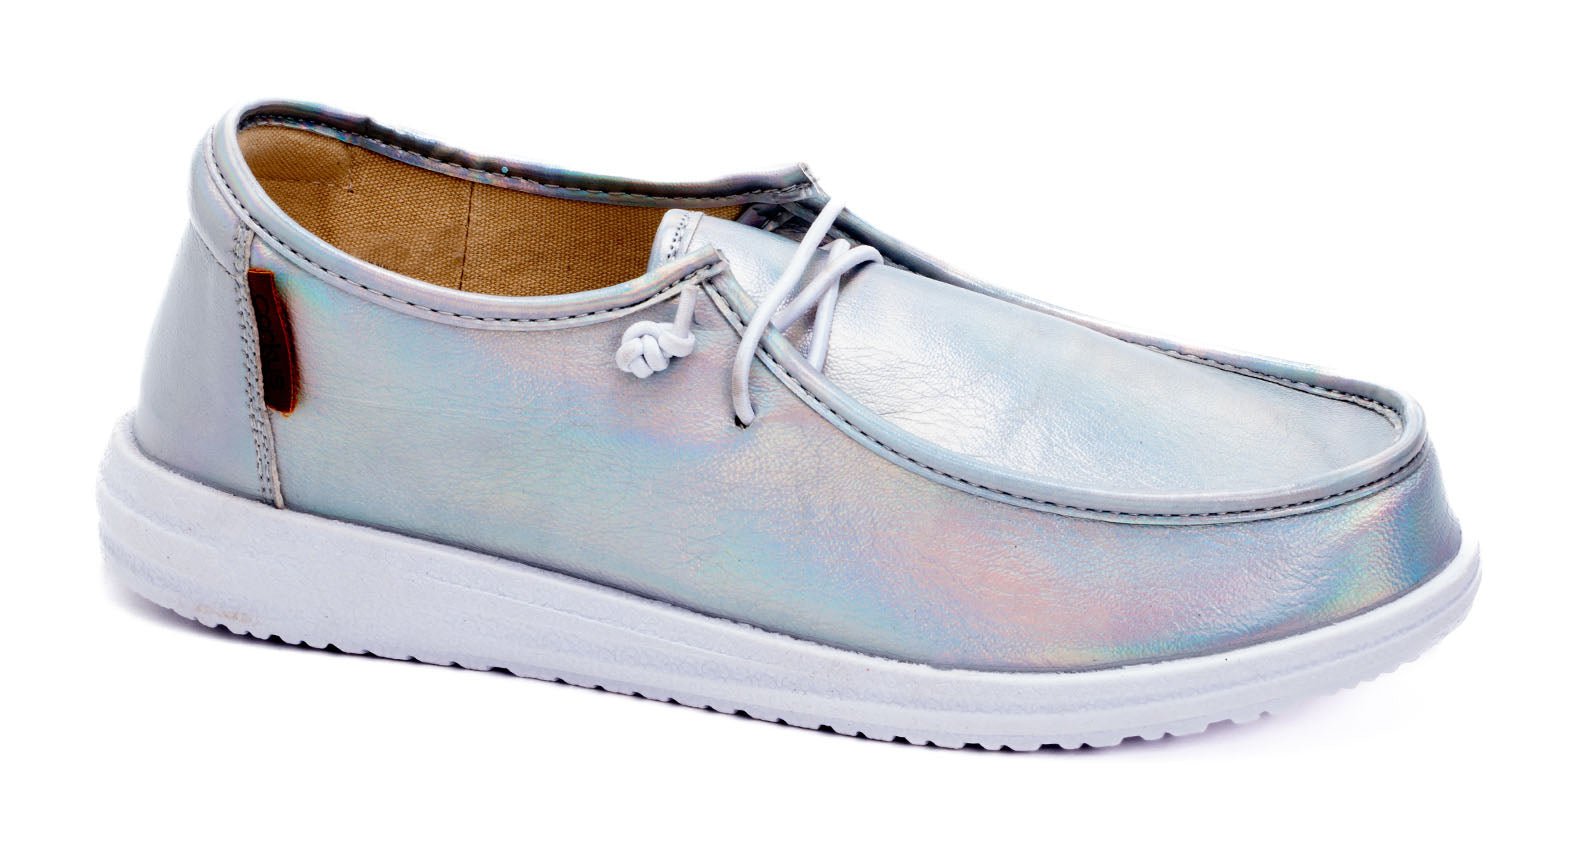 Kayak Slip-on Sneaker Shoe - Silver Iridescent - Lavender Hills BeautyCorkys Footwear51-0127-SLIR-U-6